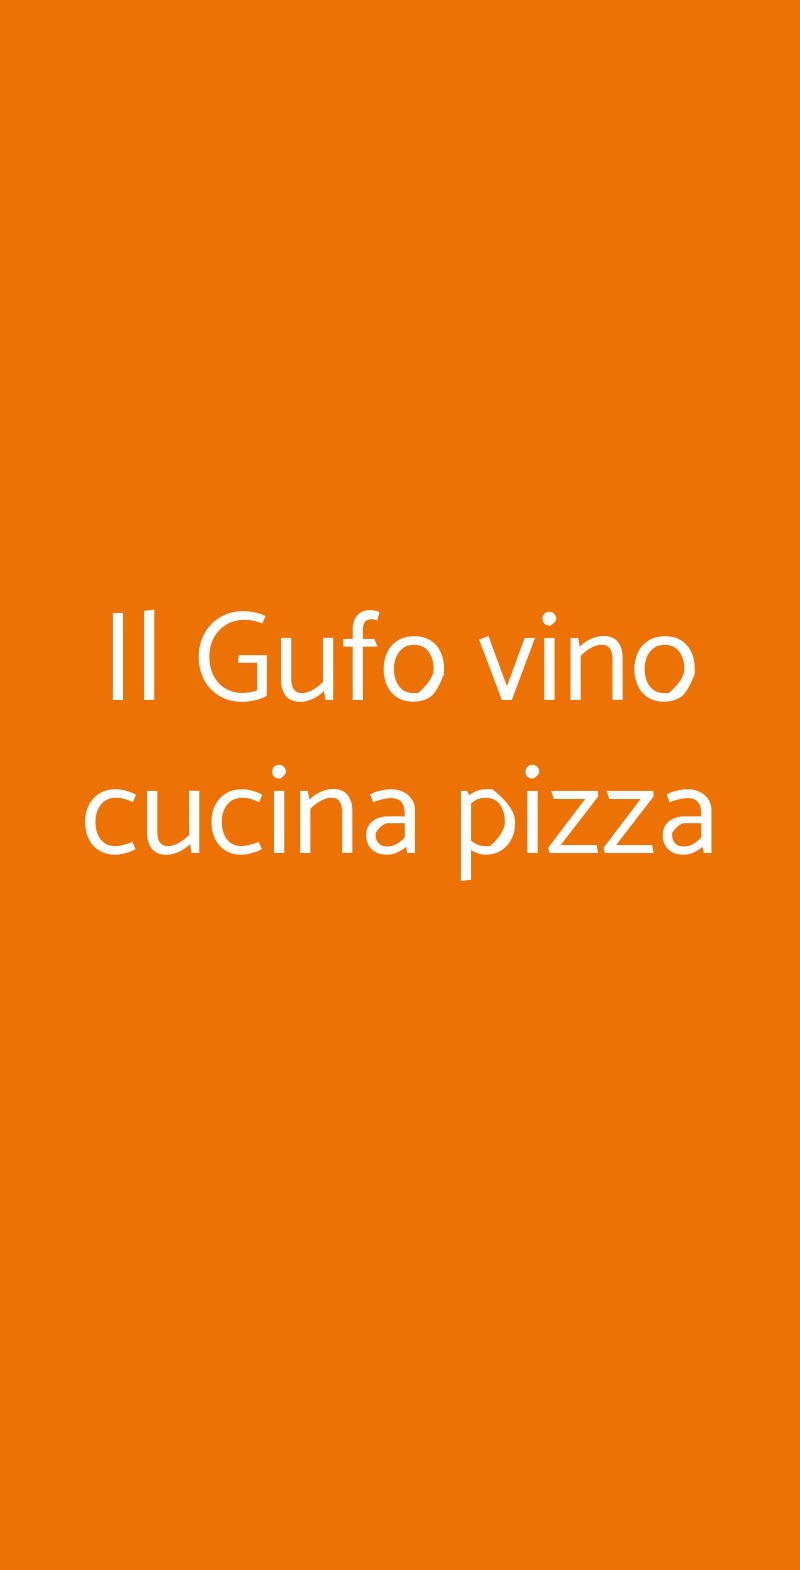 Il Gufo vino cucina pizza Genova menù 1 pagina